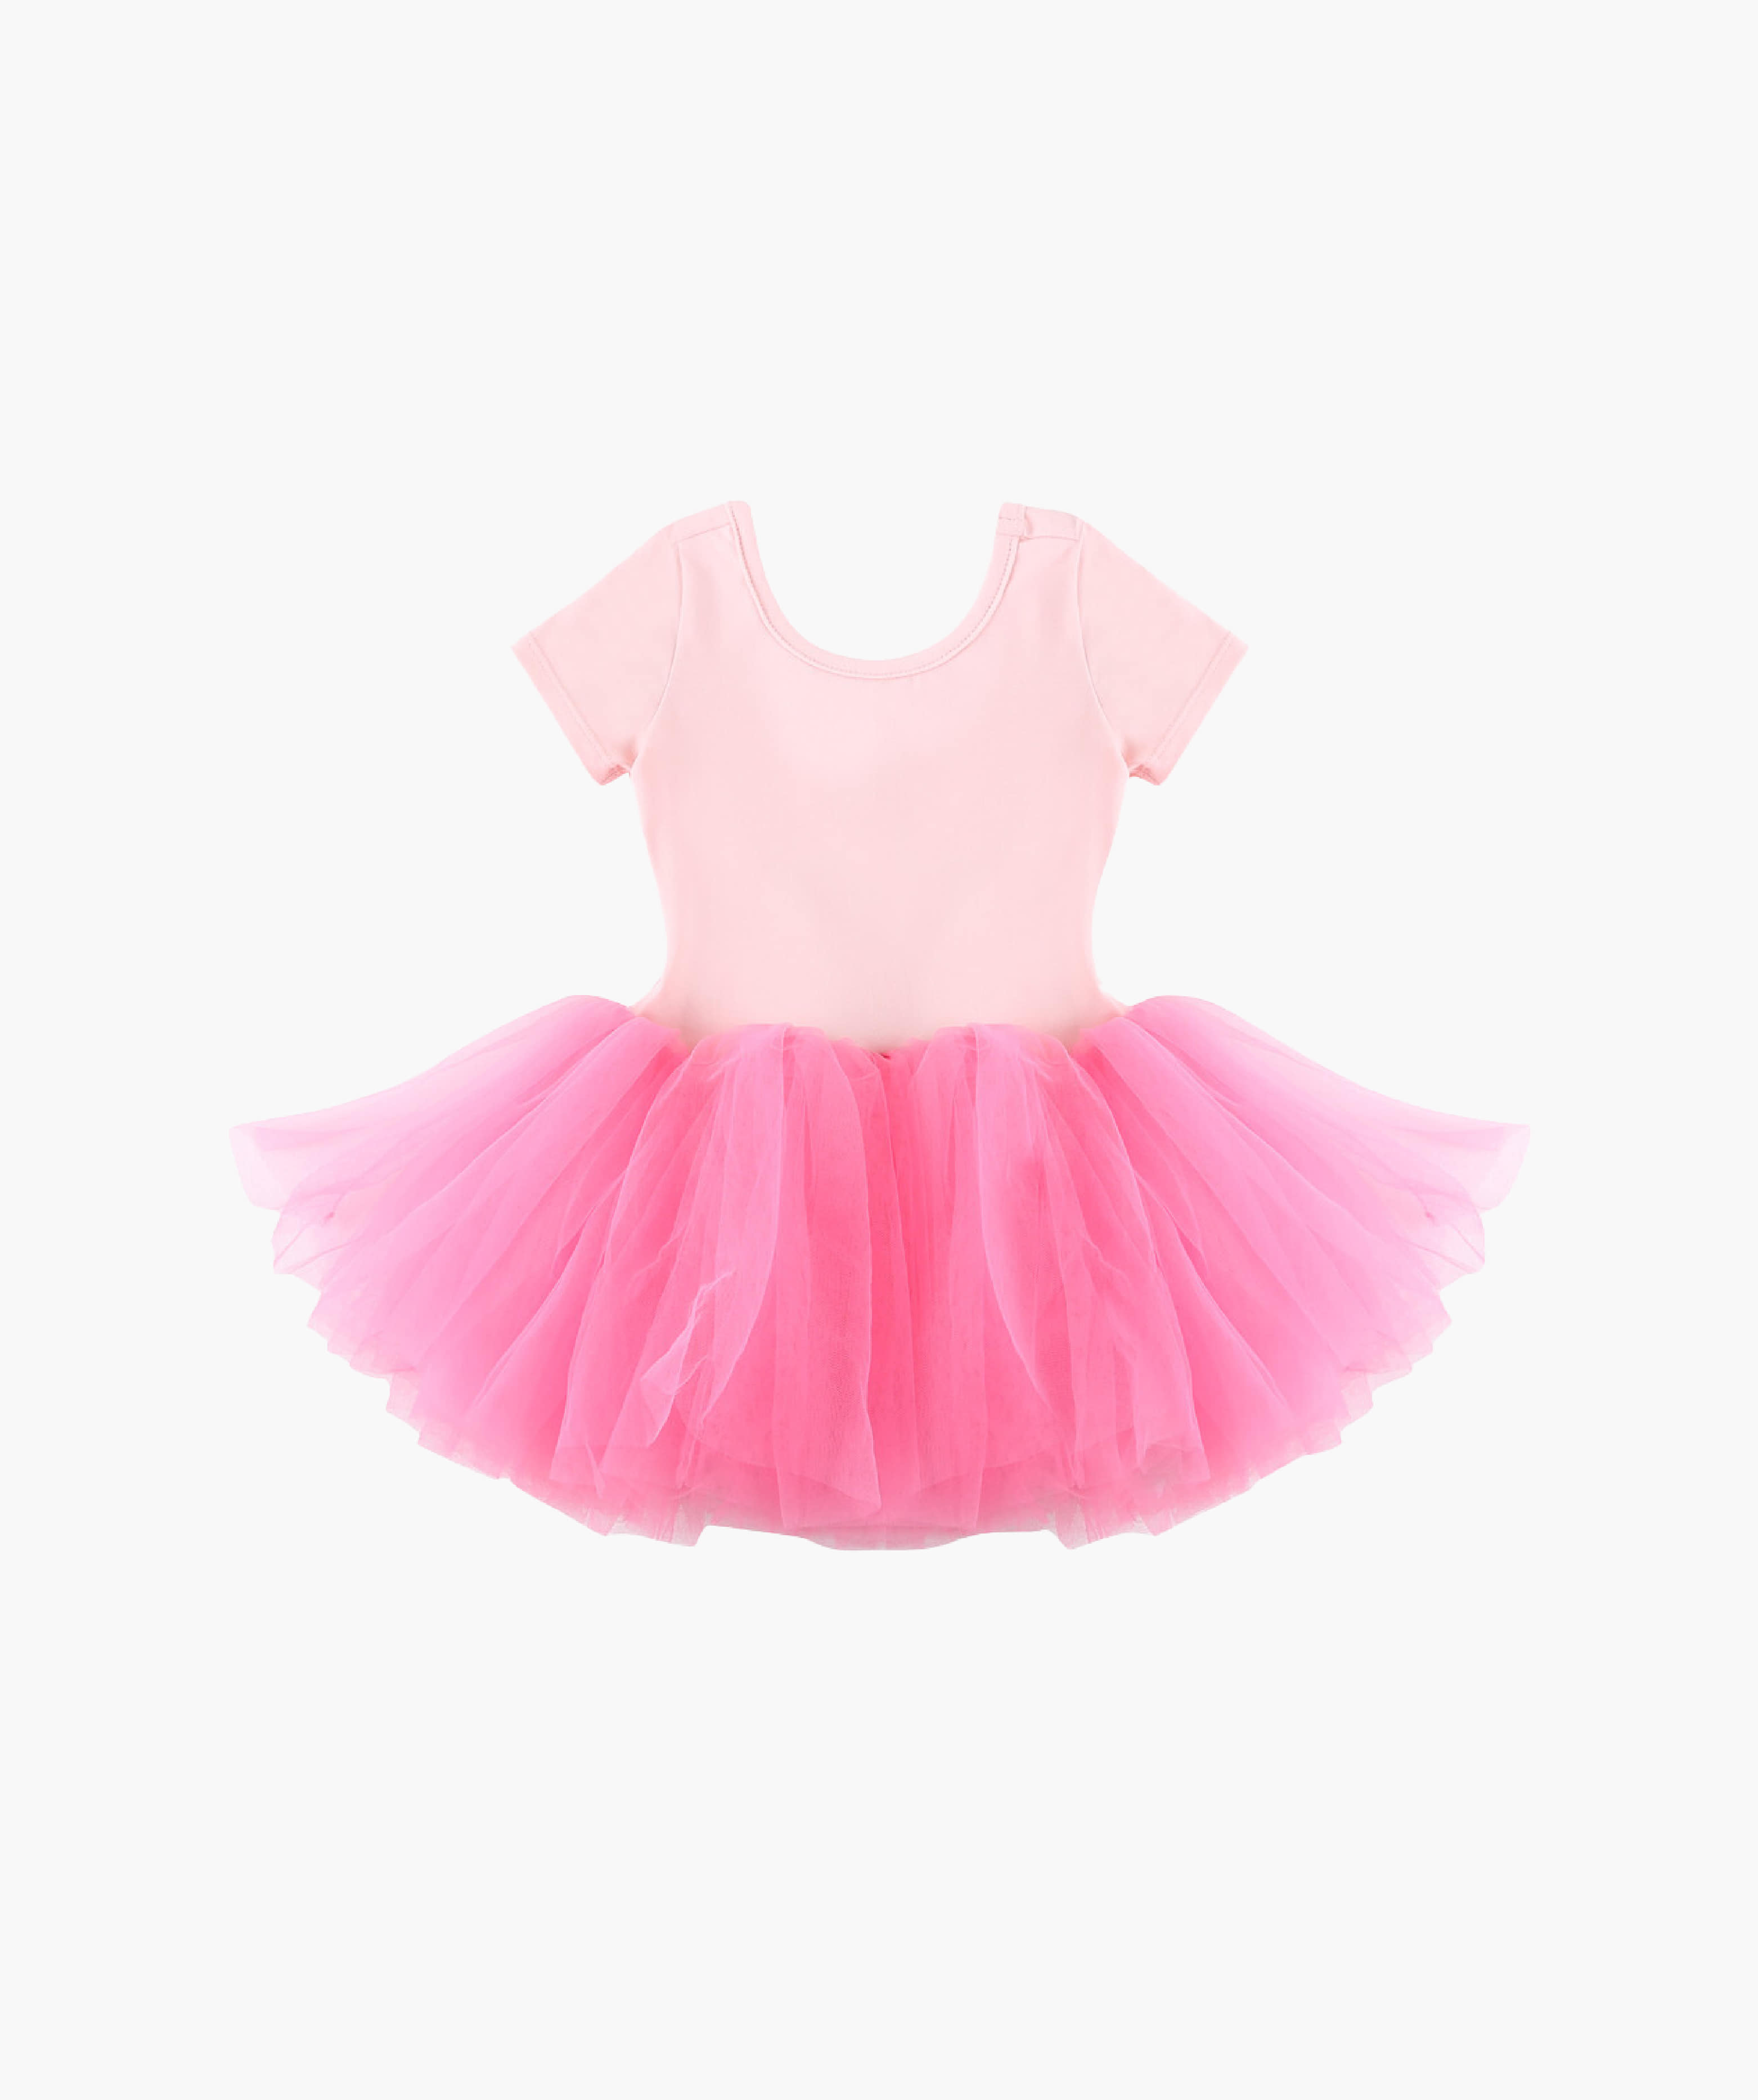 Snap Ruffle Tutu Dress_Pink